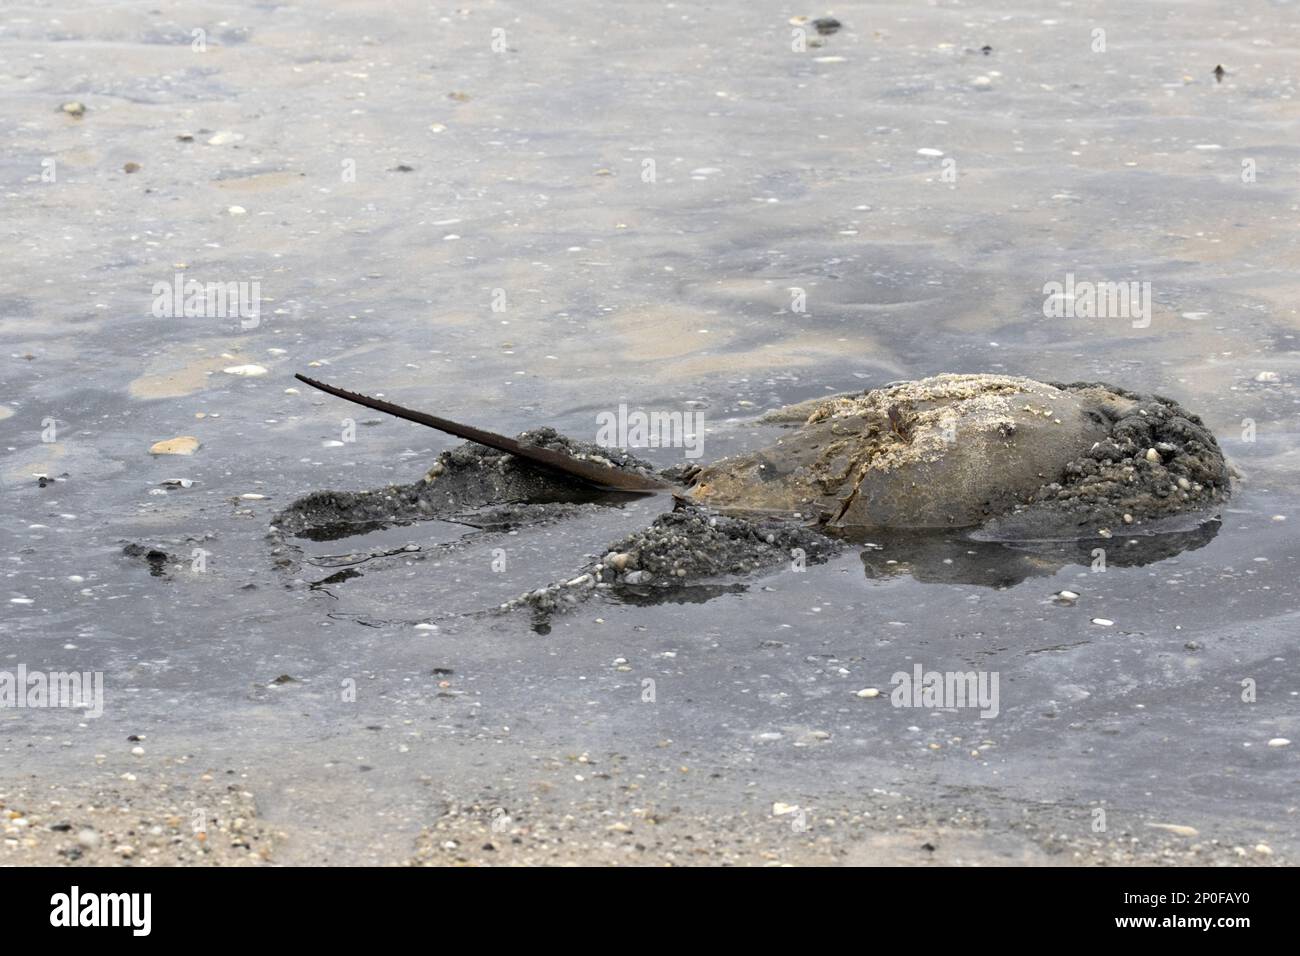 Ausgewachsene Atlantische Hufeisenkrebse in flachem Wasser mit Hochschwanz, Cape May, Ostküste der USA, Limulus polyphemus Stockfoto